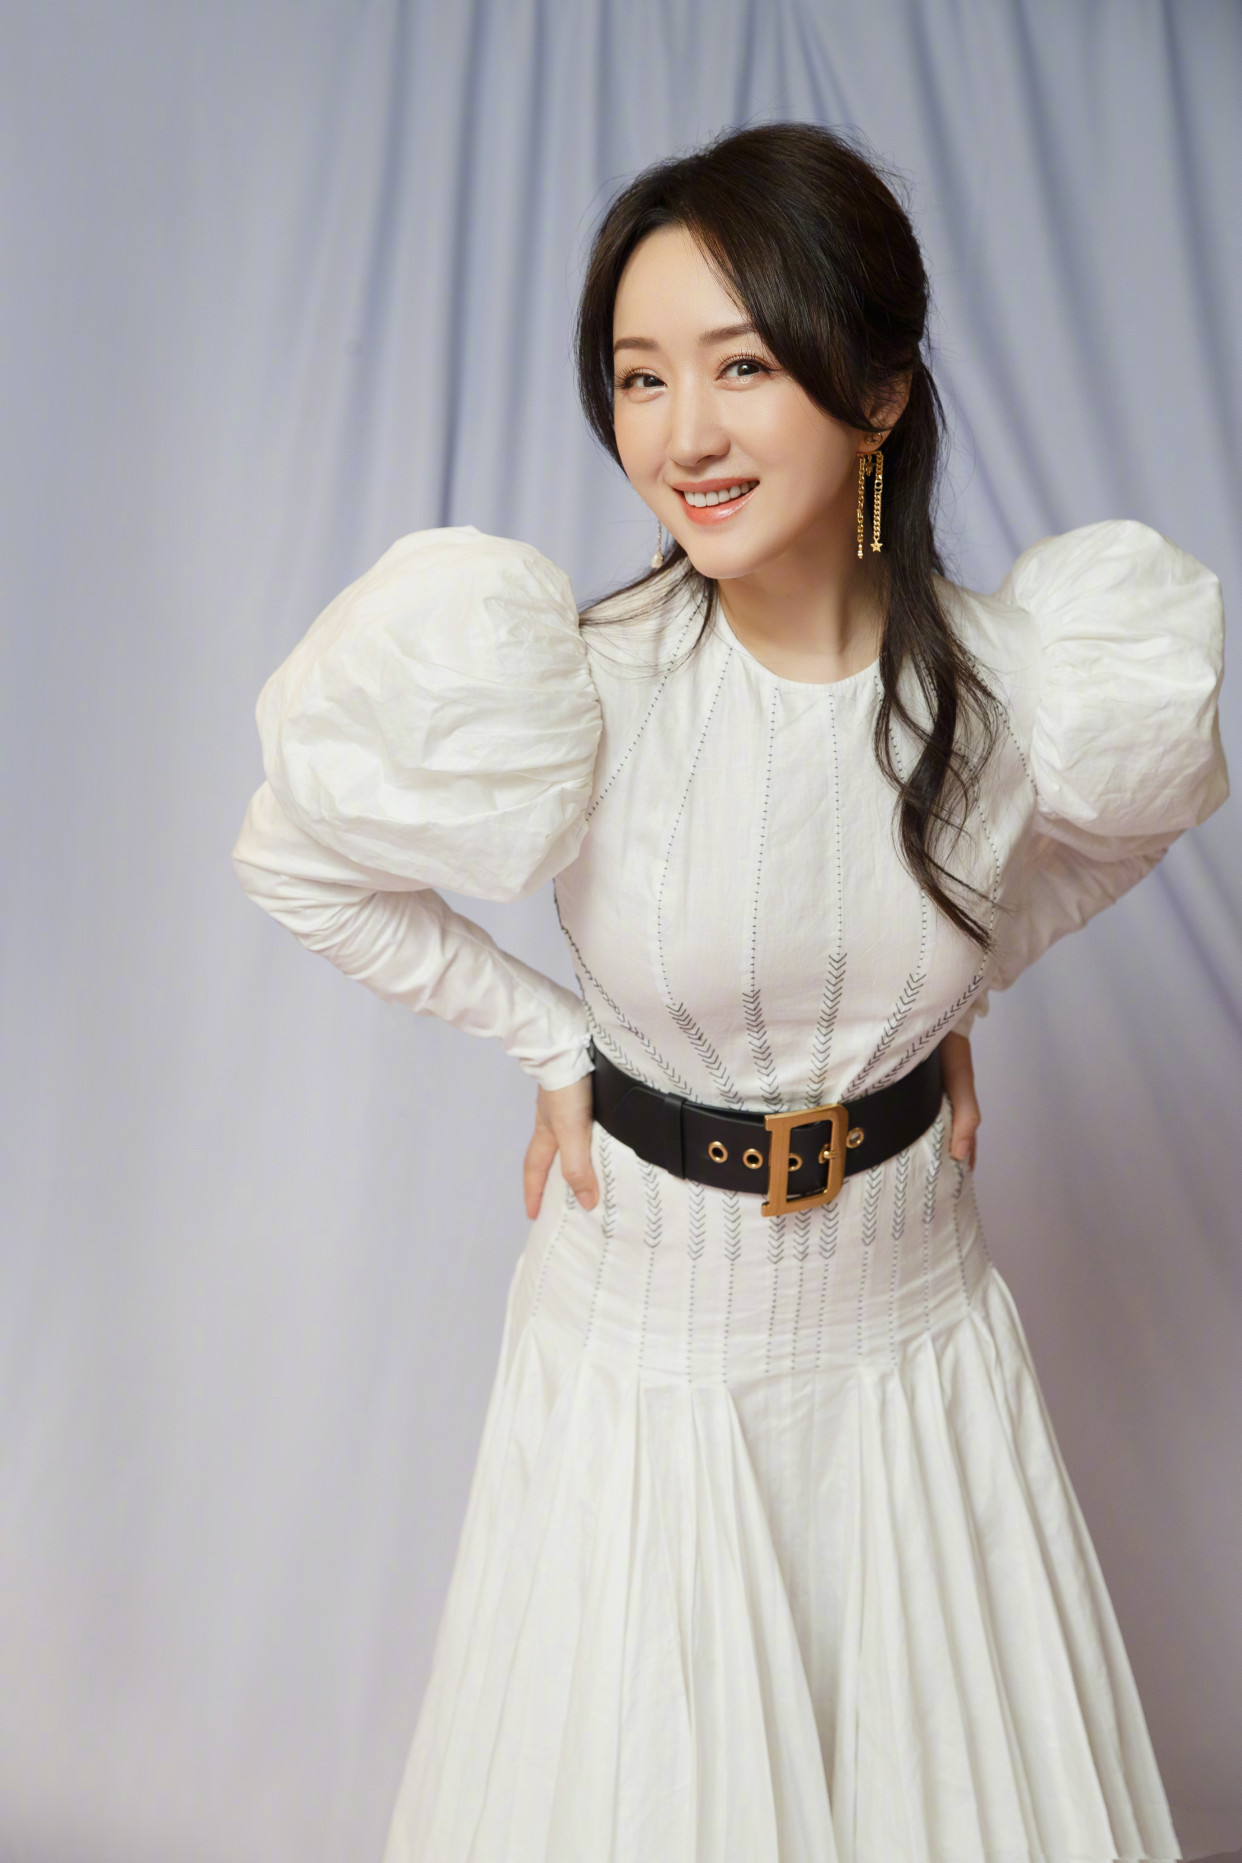 杨钰莹换新发型美得惊艳,穿公主裙优雅脱俗,49岁身材还有料